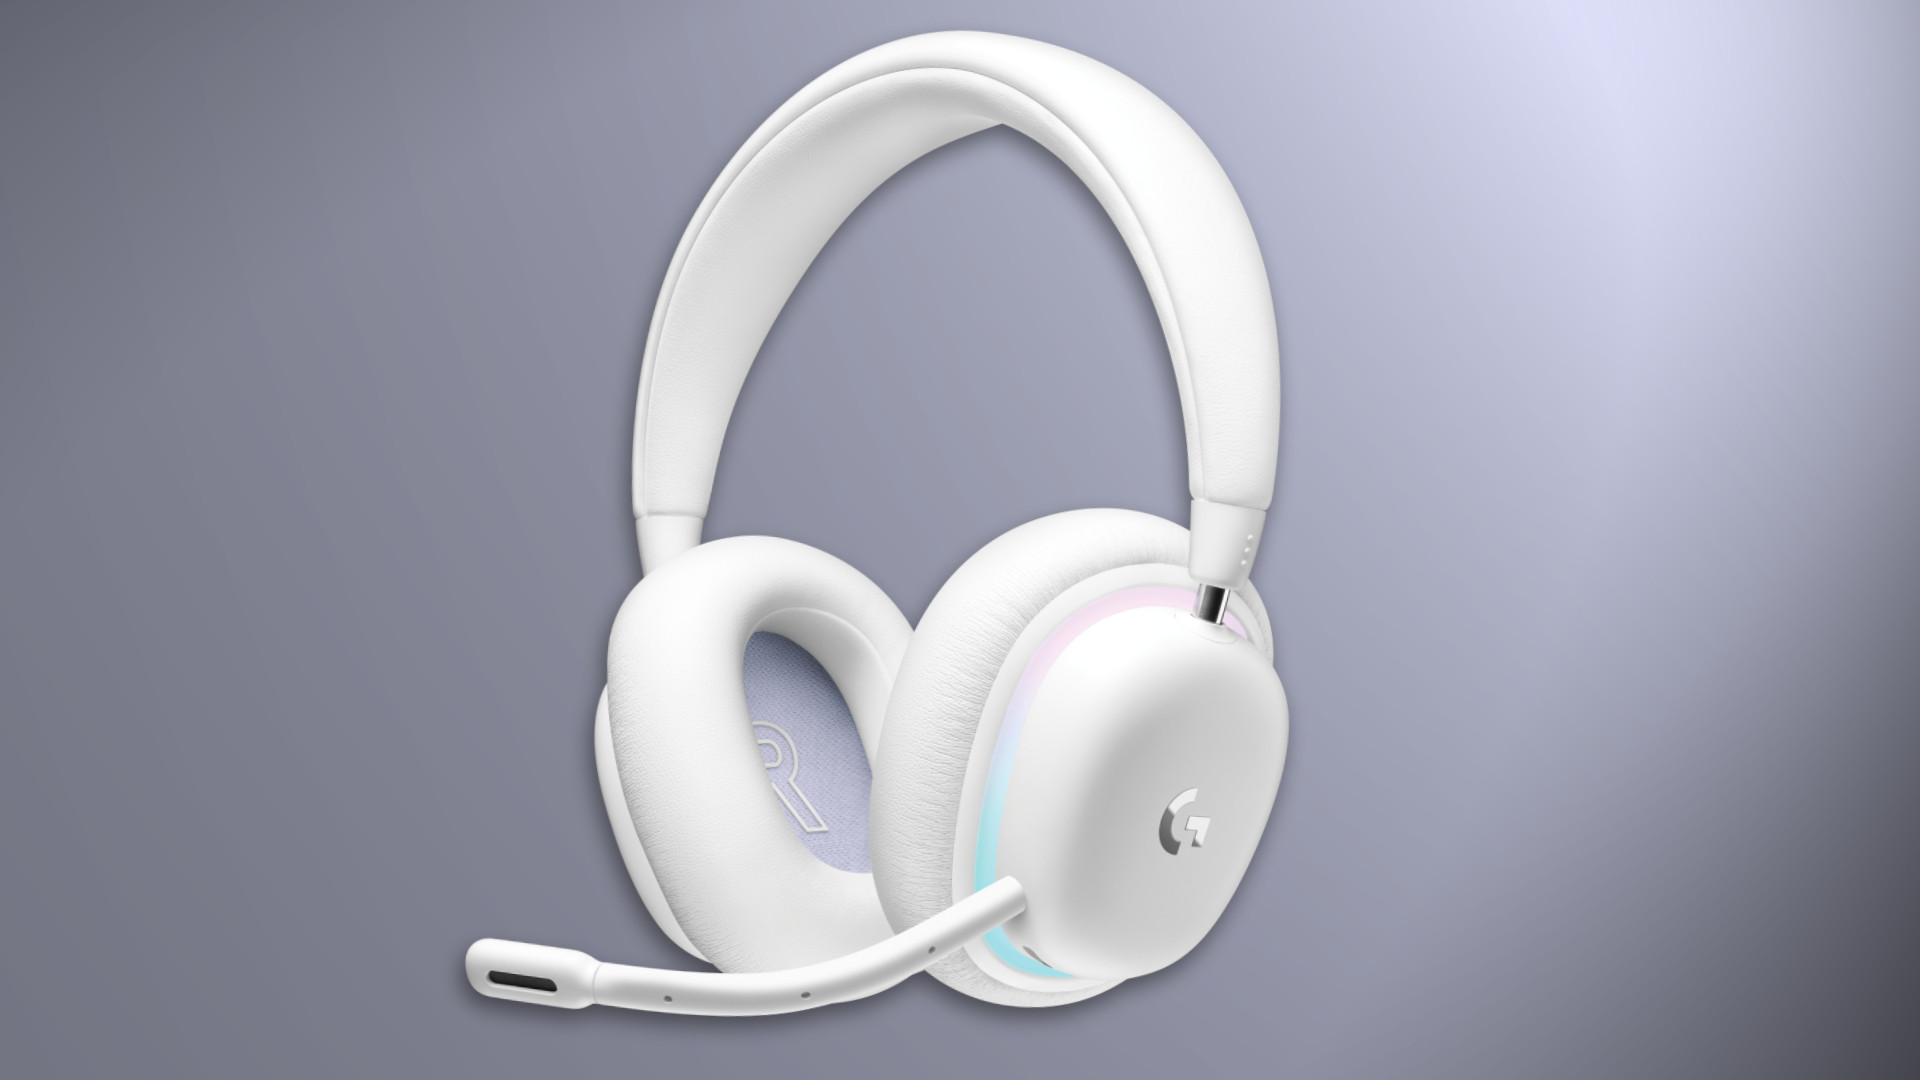 Casque Audio Bluetooth 5.0 Design Oreilles de Chat - Blanc - Français